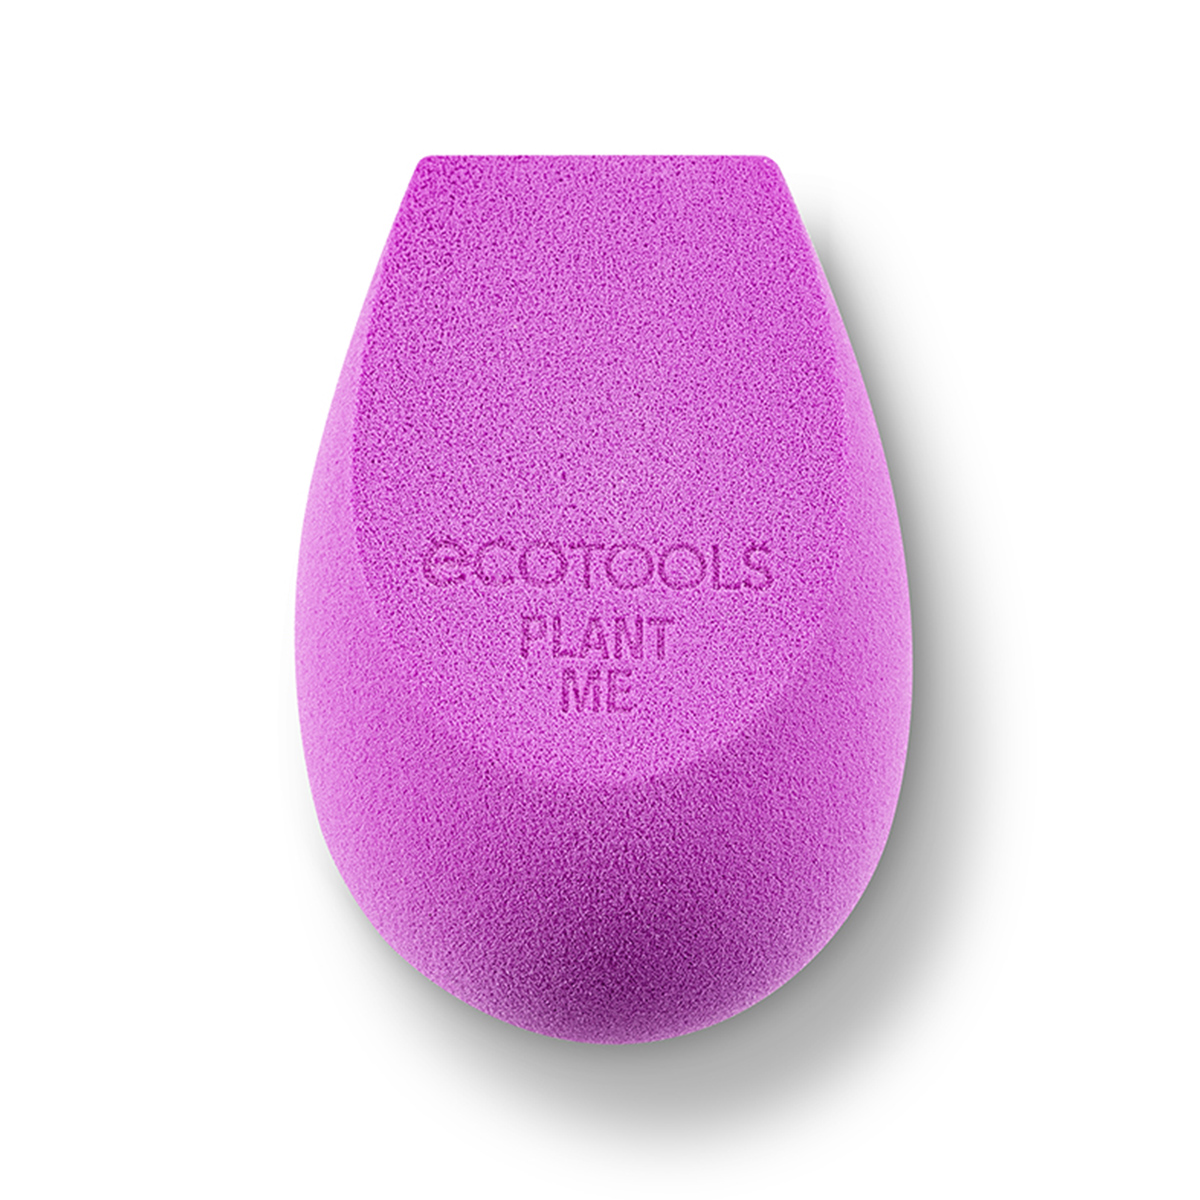 Биоразлагемый спонж для макияжа EcoTools Bioblender Makeup Sponge